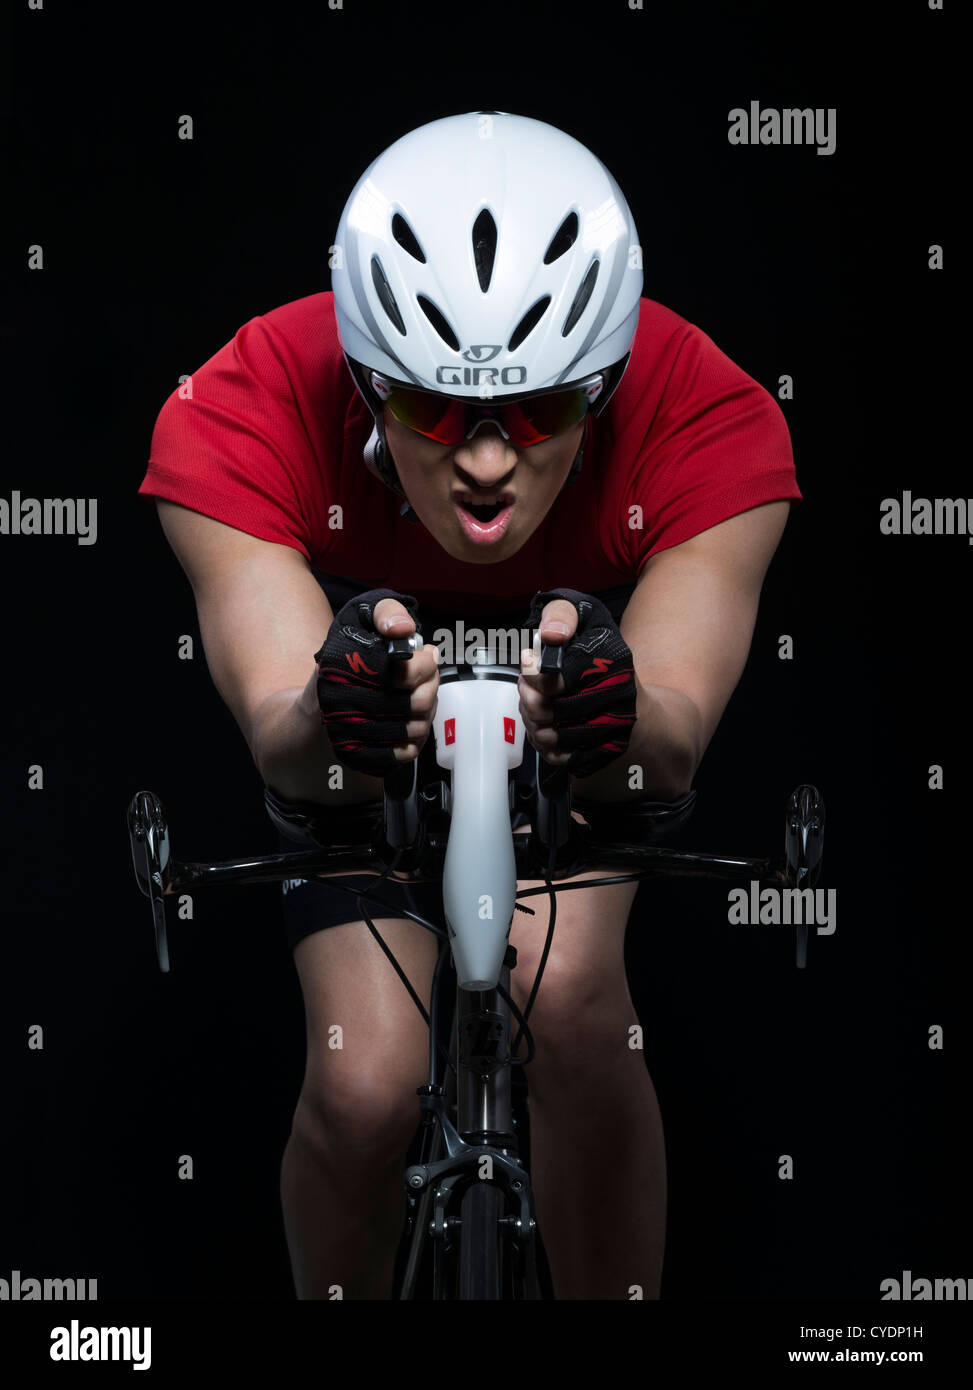 Triatleta / crono racer in bicicletta indossando il casco aero Foto Stock